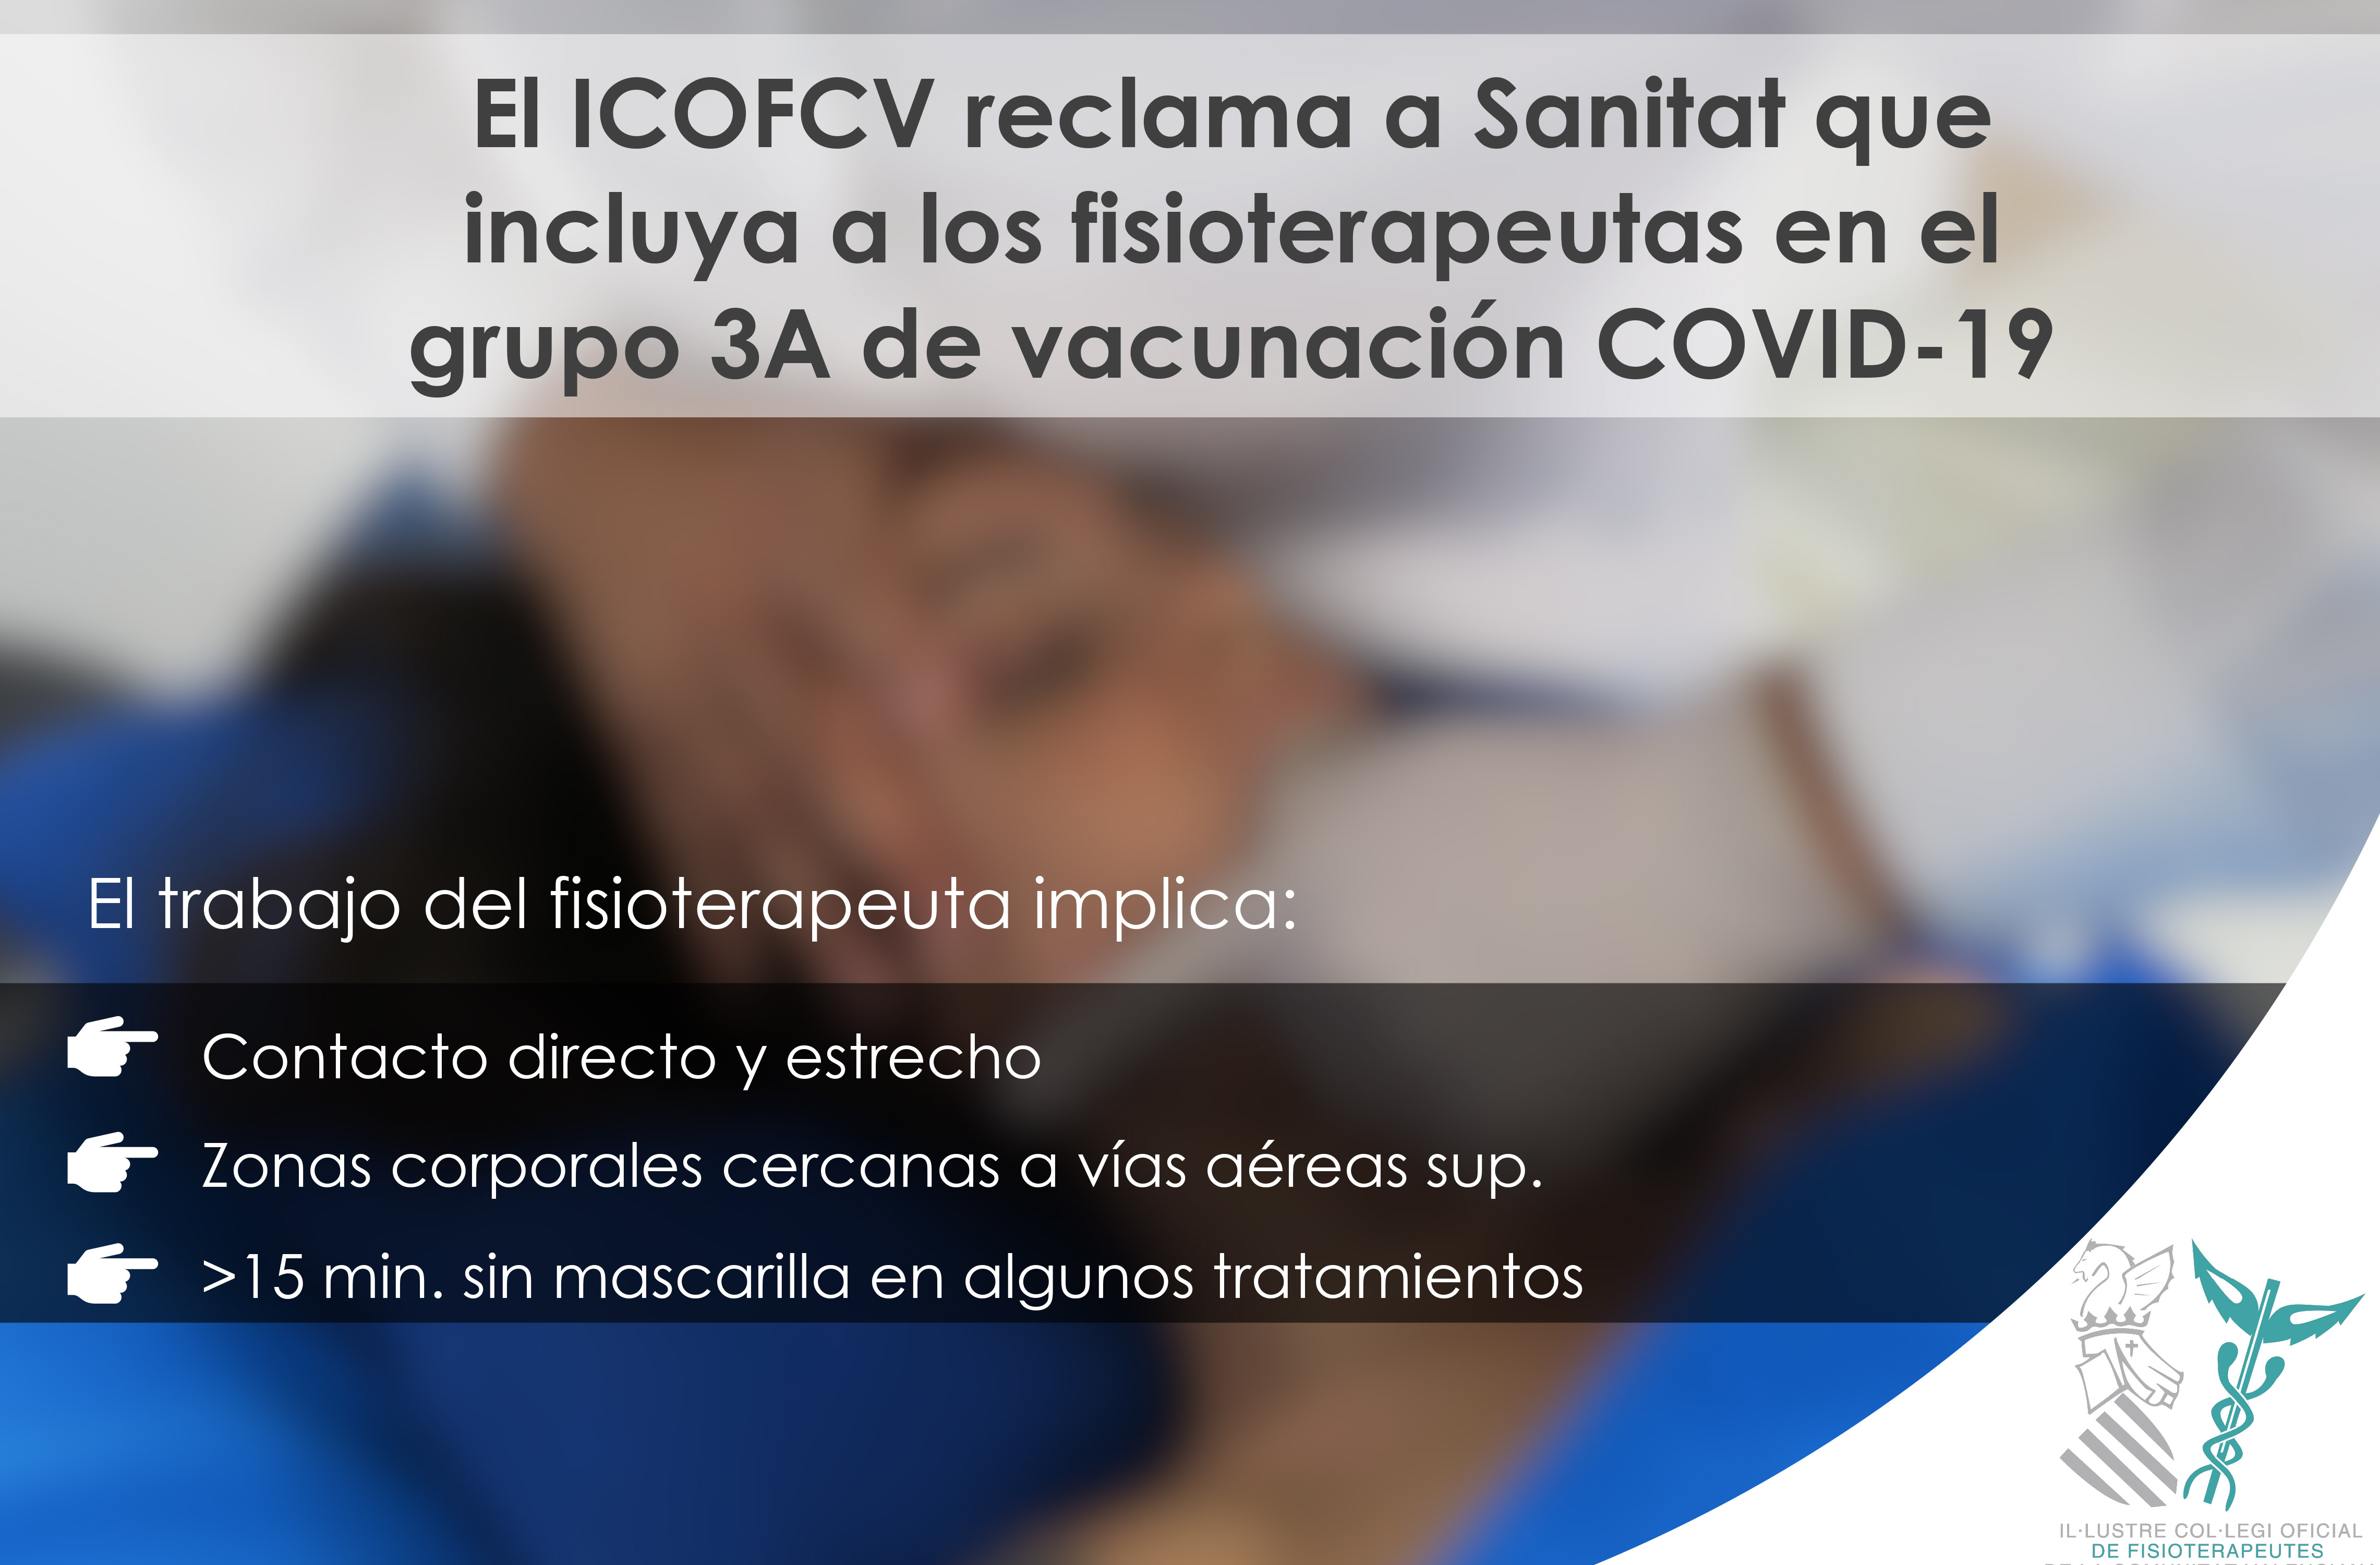 El ICOFCV reclama a Sanitat que incluya a los fisioterapeutas en el grupo 3A de vacunación Covid-19